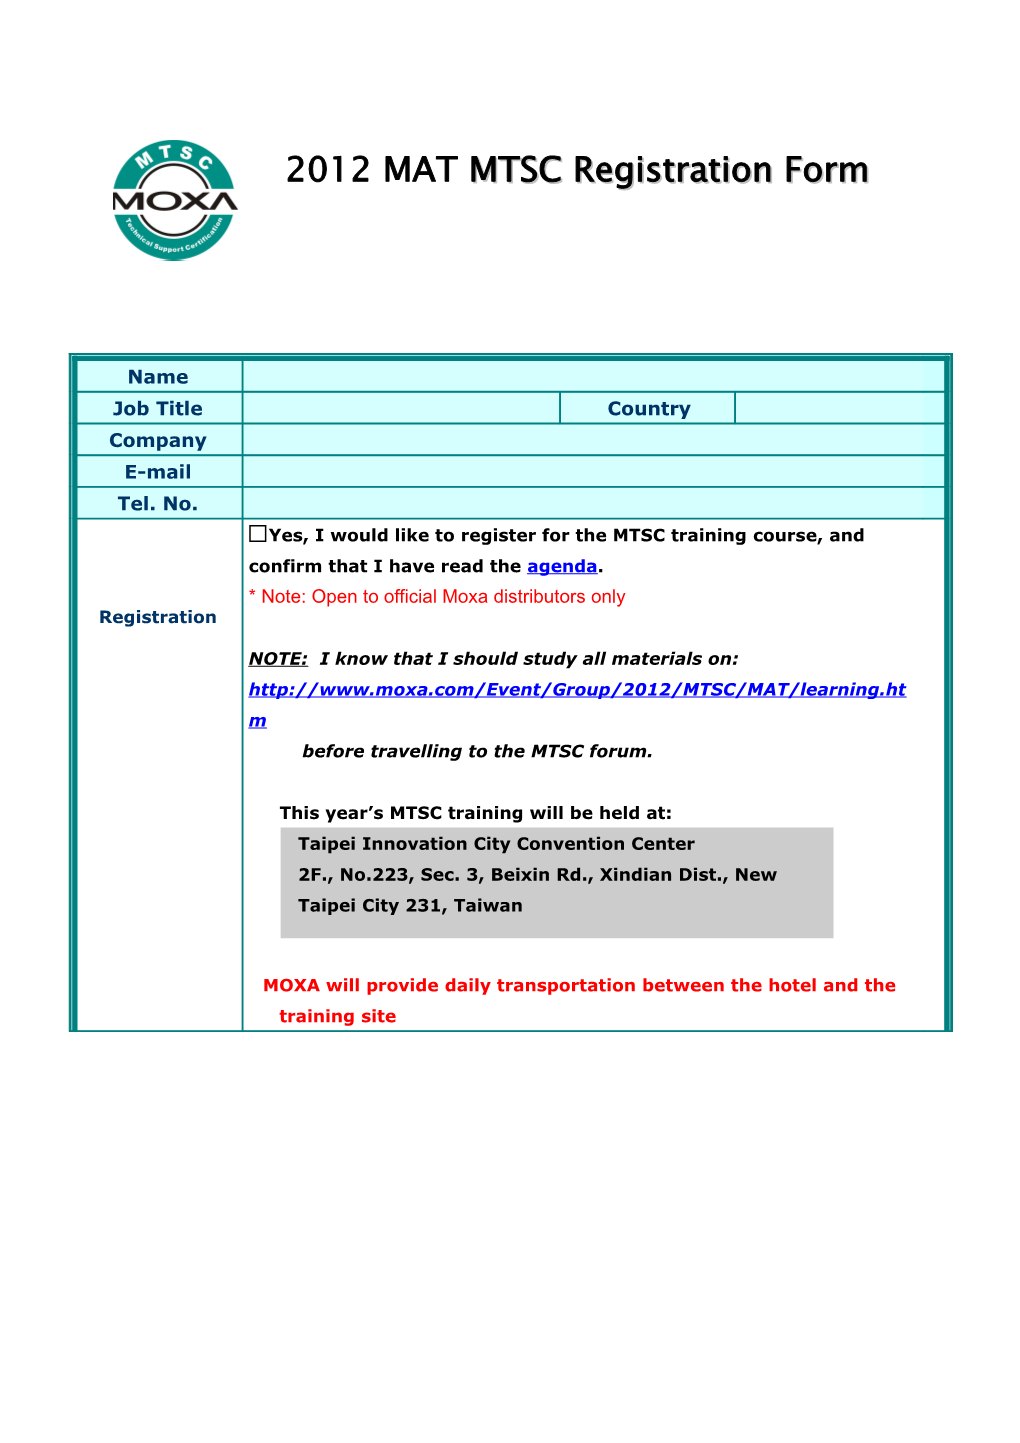 2004 MTSC Registration Form